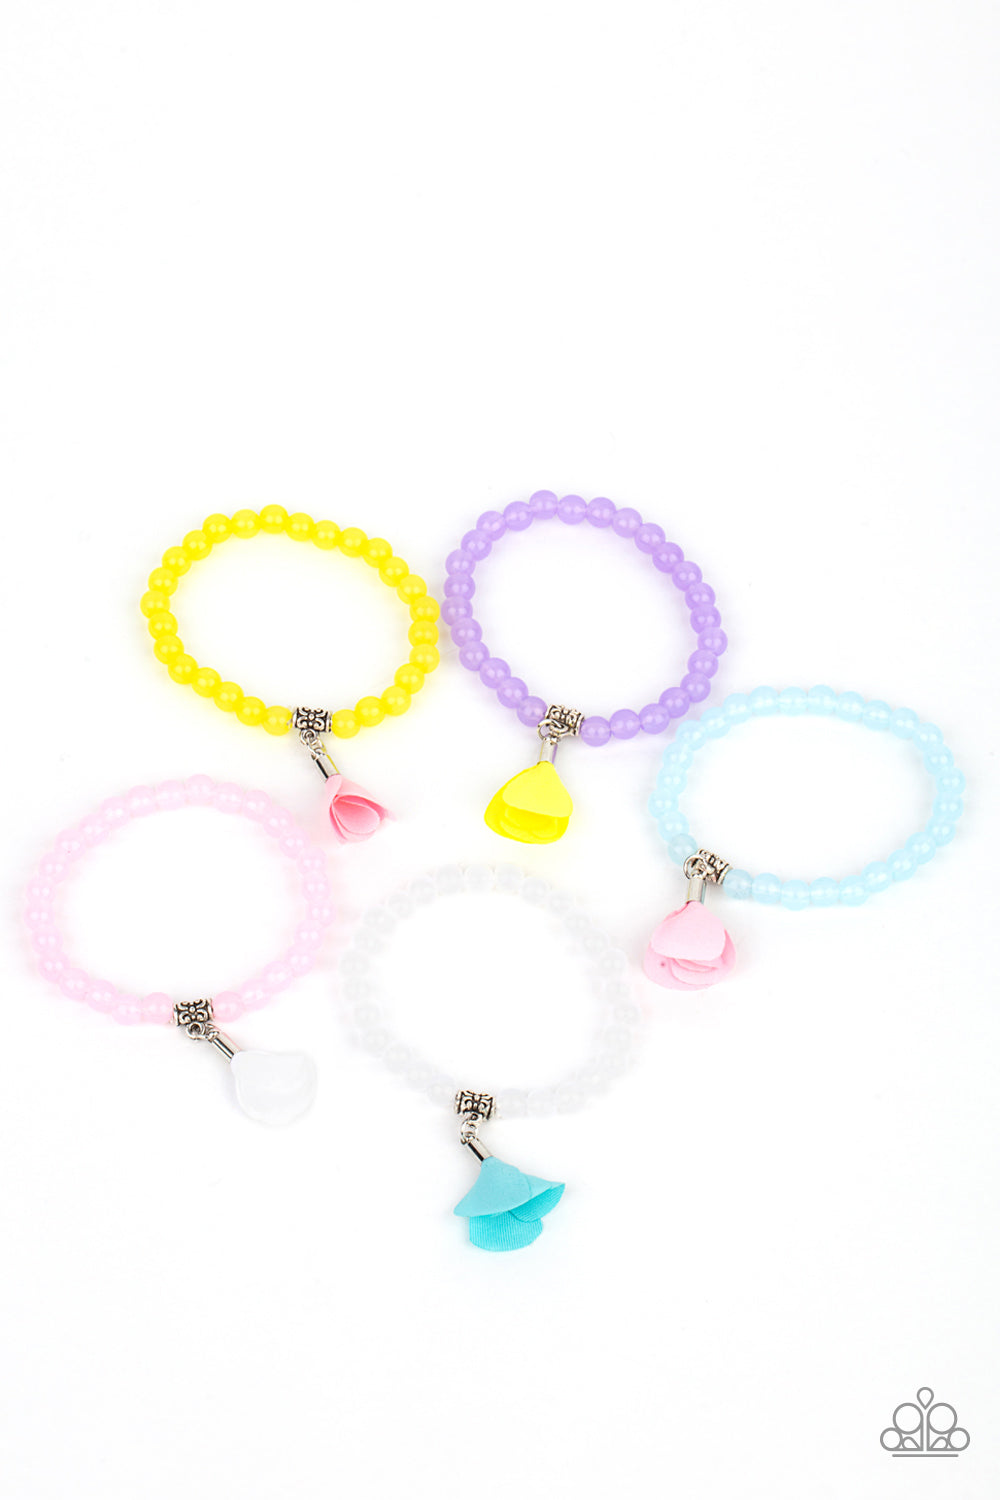 Starlet Shimmer Bracelet Kit - Pretykimsbling